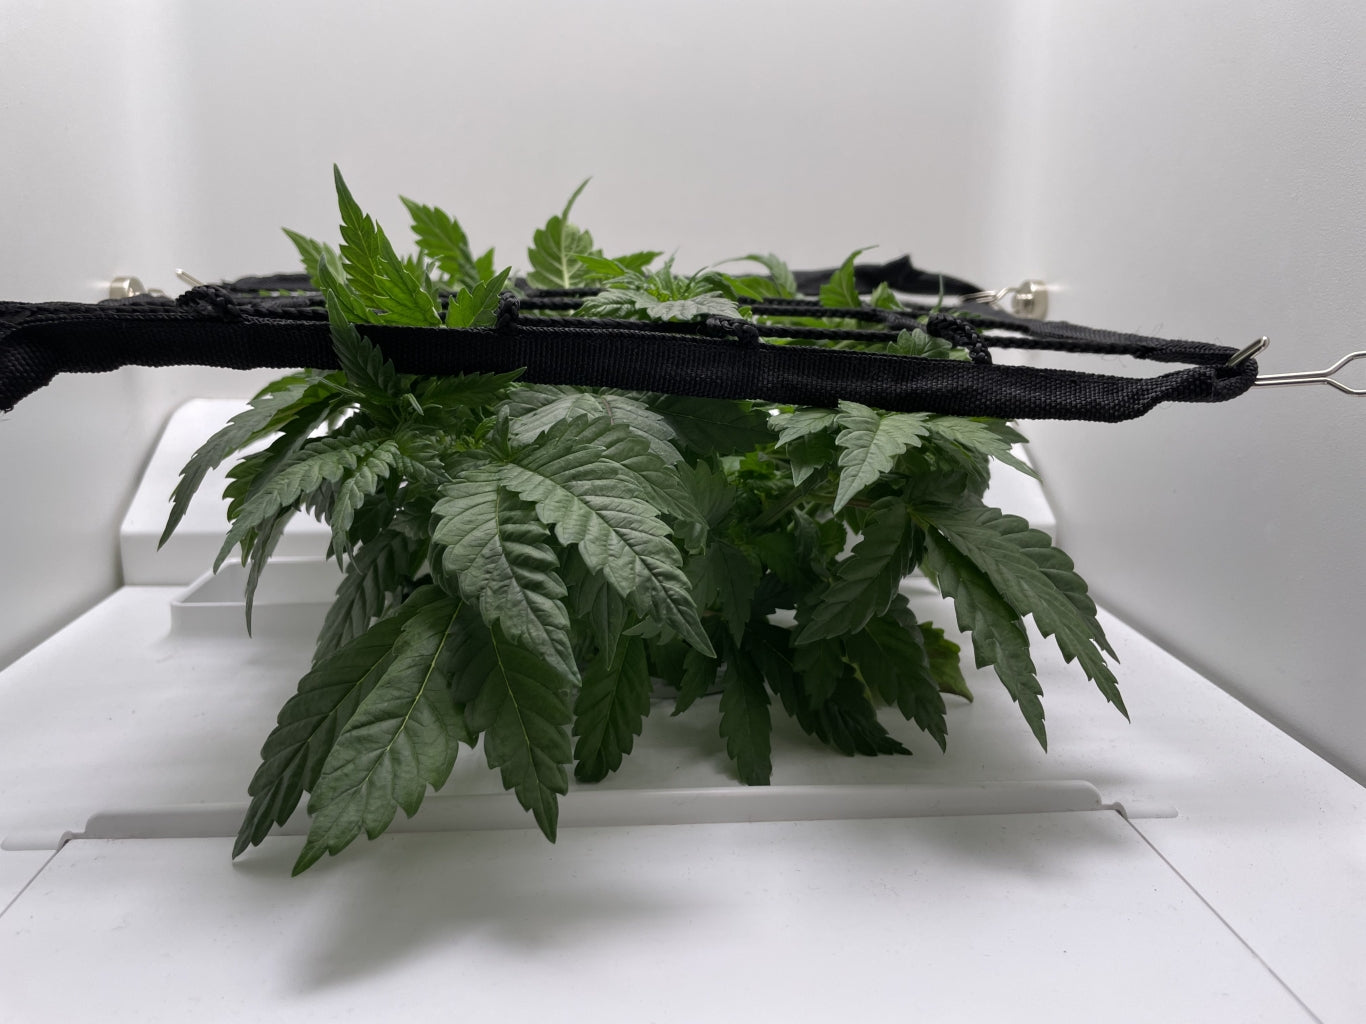 SCROG cannabis plants in Hey abby grow box